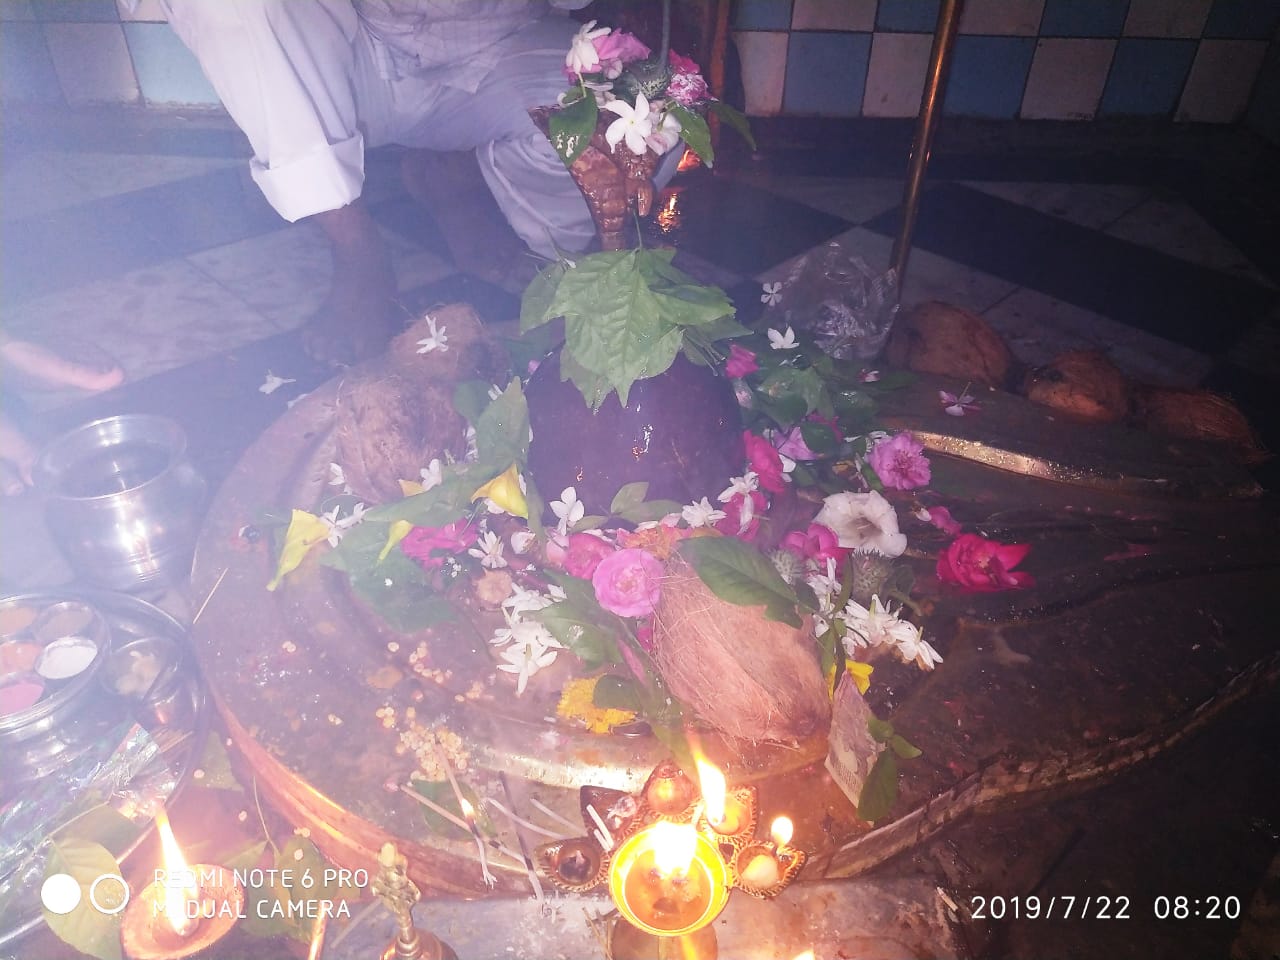 श्रावण सोमवार के प्रथम दिन शिवालयों में लगा भक्तों का तांता, की गई विशेष पूजा अर्चना | New India Times